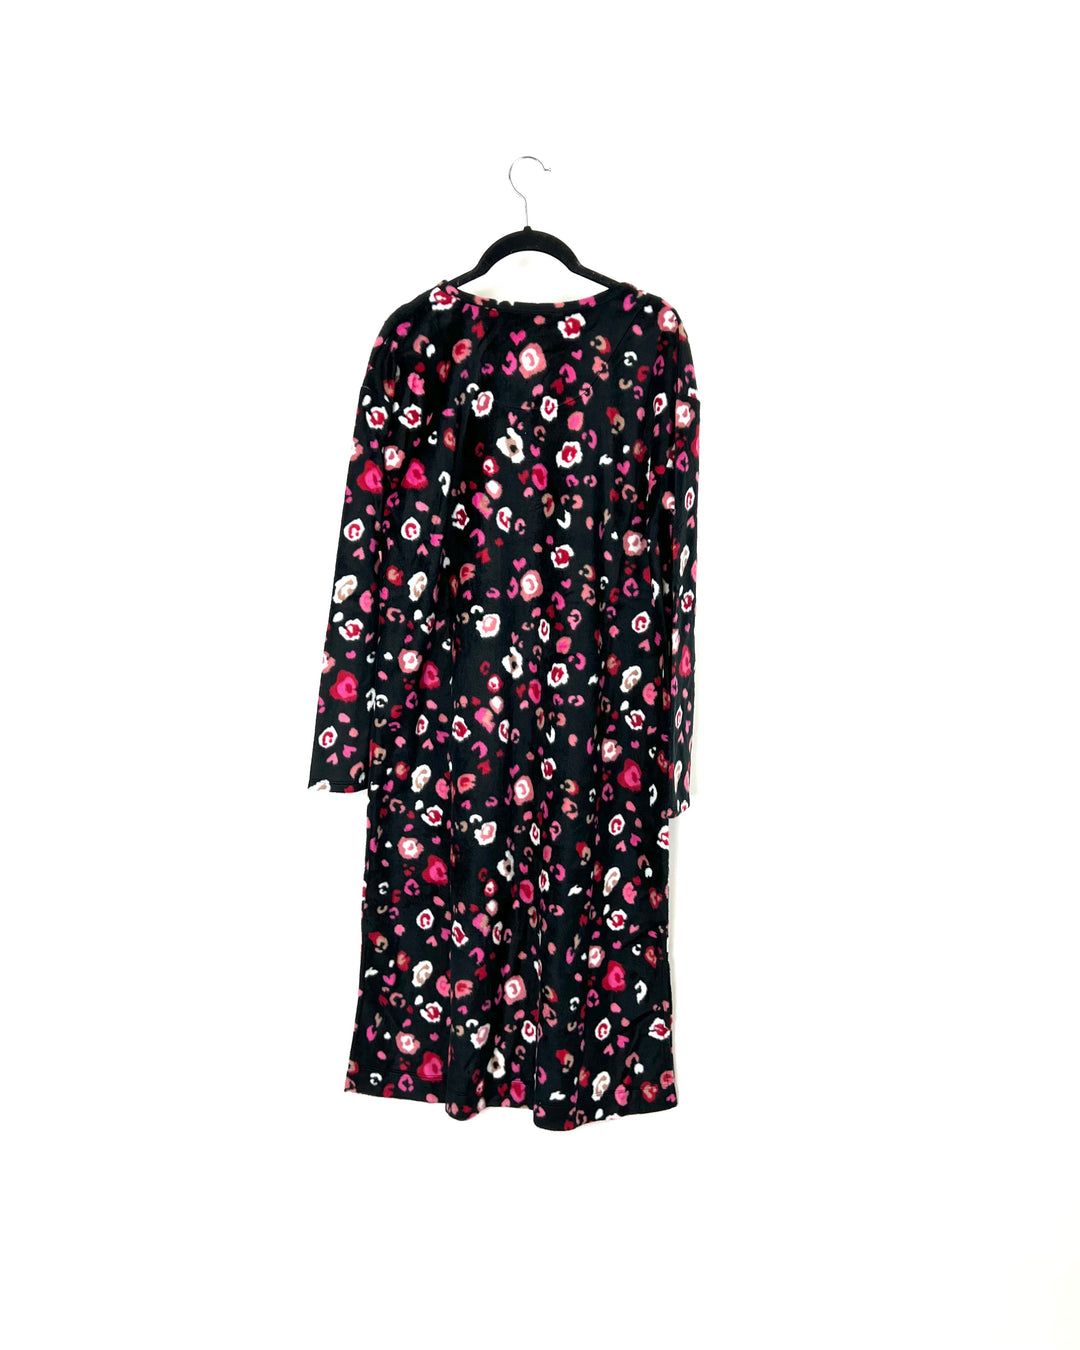 Black and Pink Cheetah Nightgown - Small/Medium